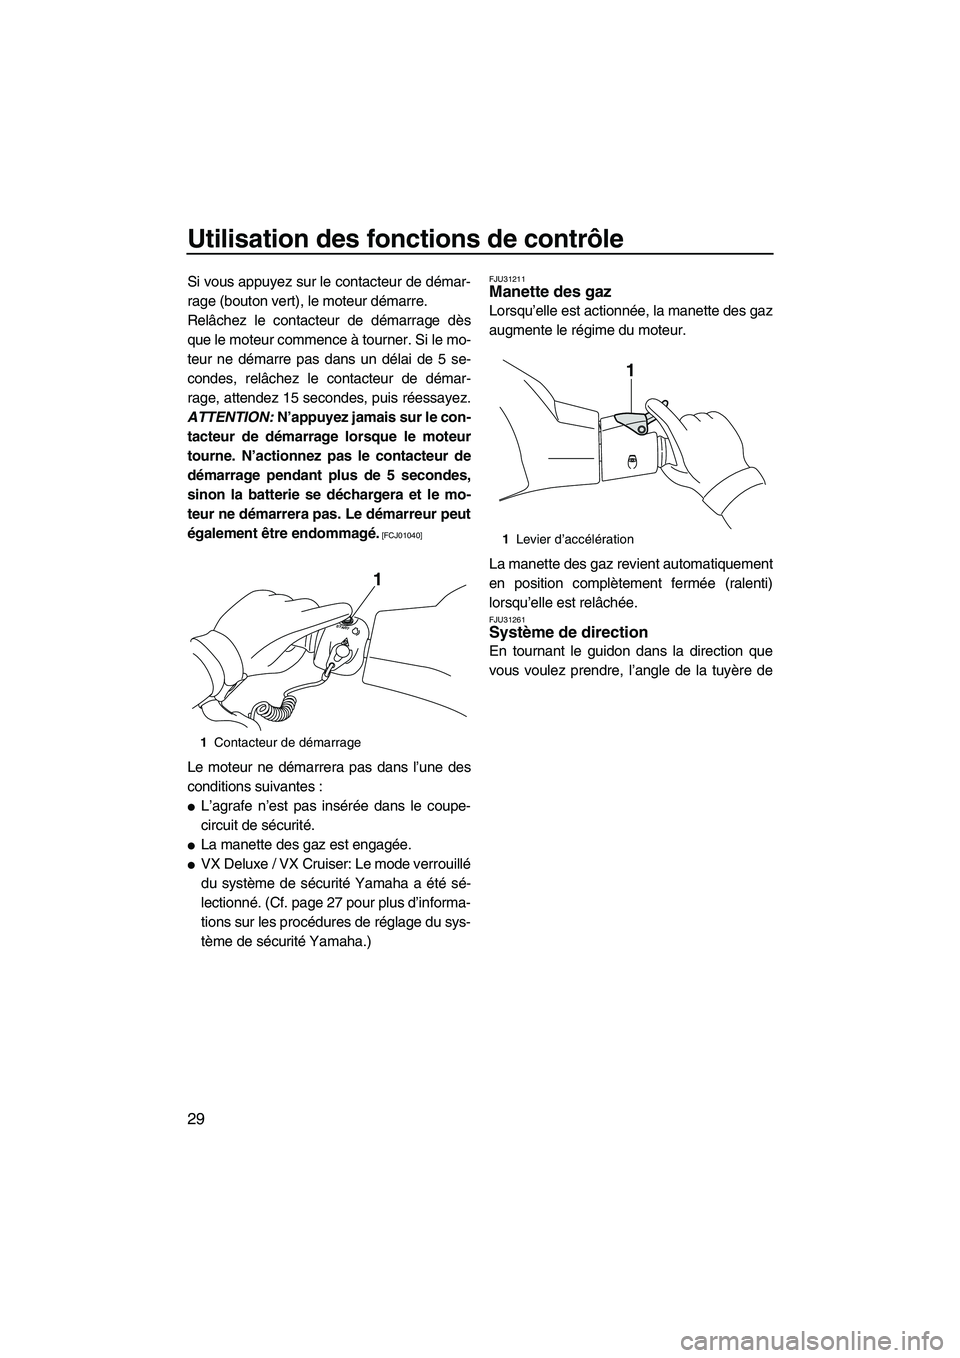 YAMAHA VX SPORT 2013  Notices Demploi (in French) Utilisation des fonctions de contrôle
29
Si vous appuyez sur le contacteur de démar-
rage (bouton vert), le moteur démarre.
Relâchez le contacteur de démarrage dès
que le moteur commence à tour